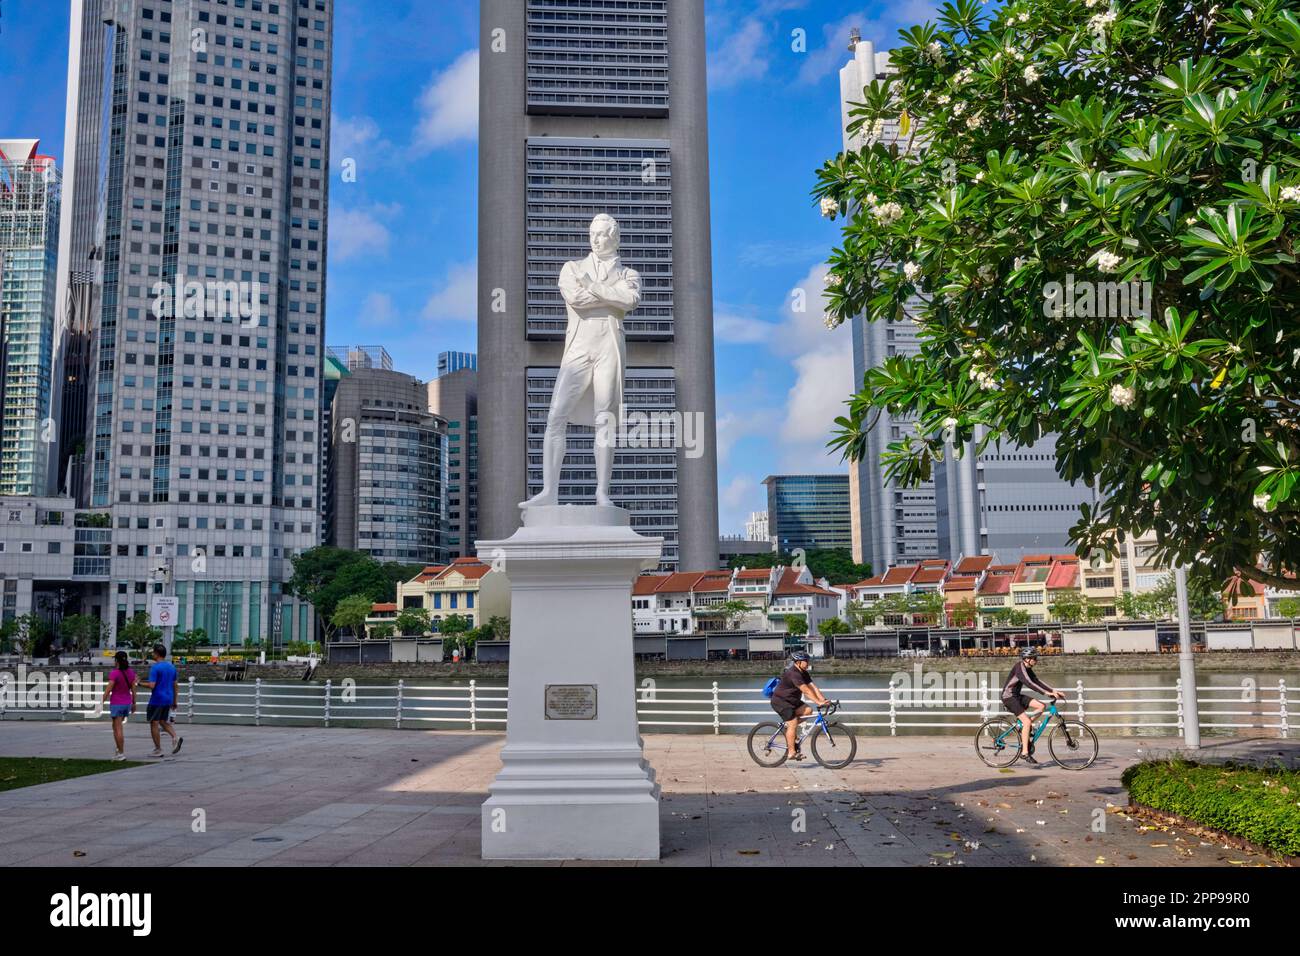 Une statue de Sir Stamford Raffles à Raffles' Landing Pier, Boat Quay, Singapore River, Singapour ; b/g : la ligne d'horizon du quartier des affaires de Singapour Banque D'Images